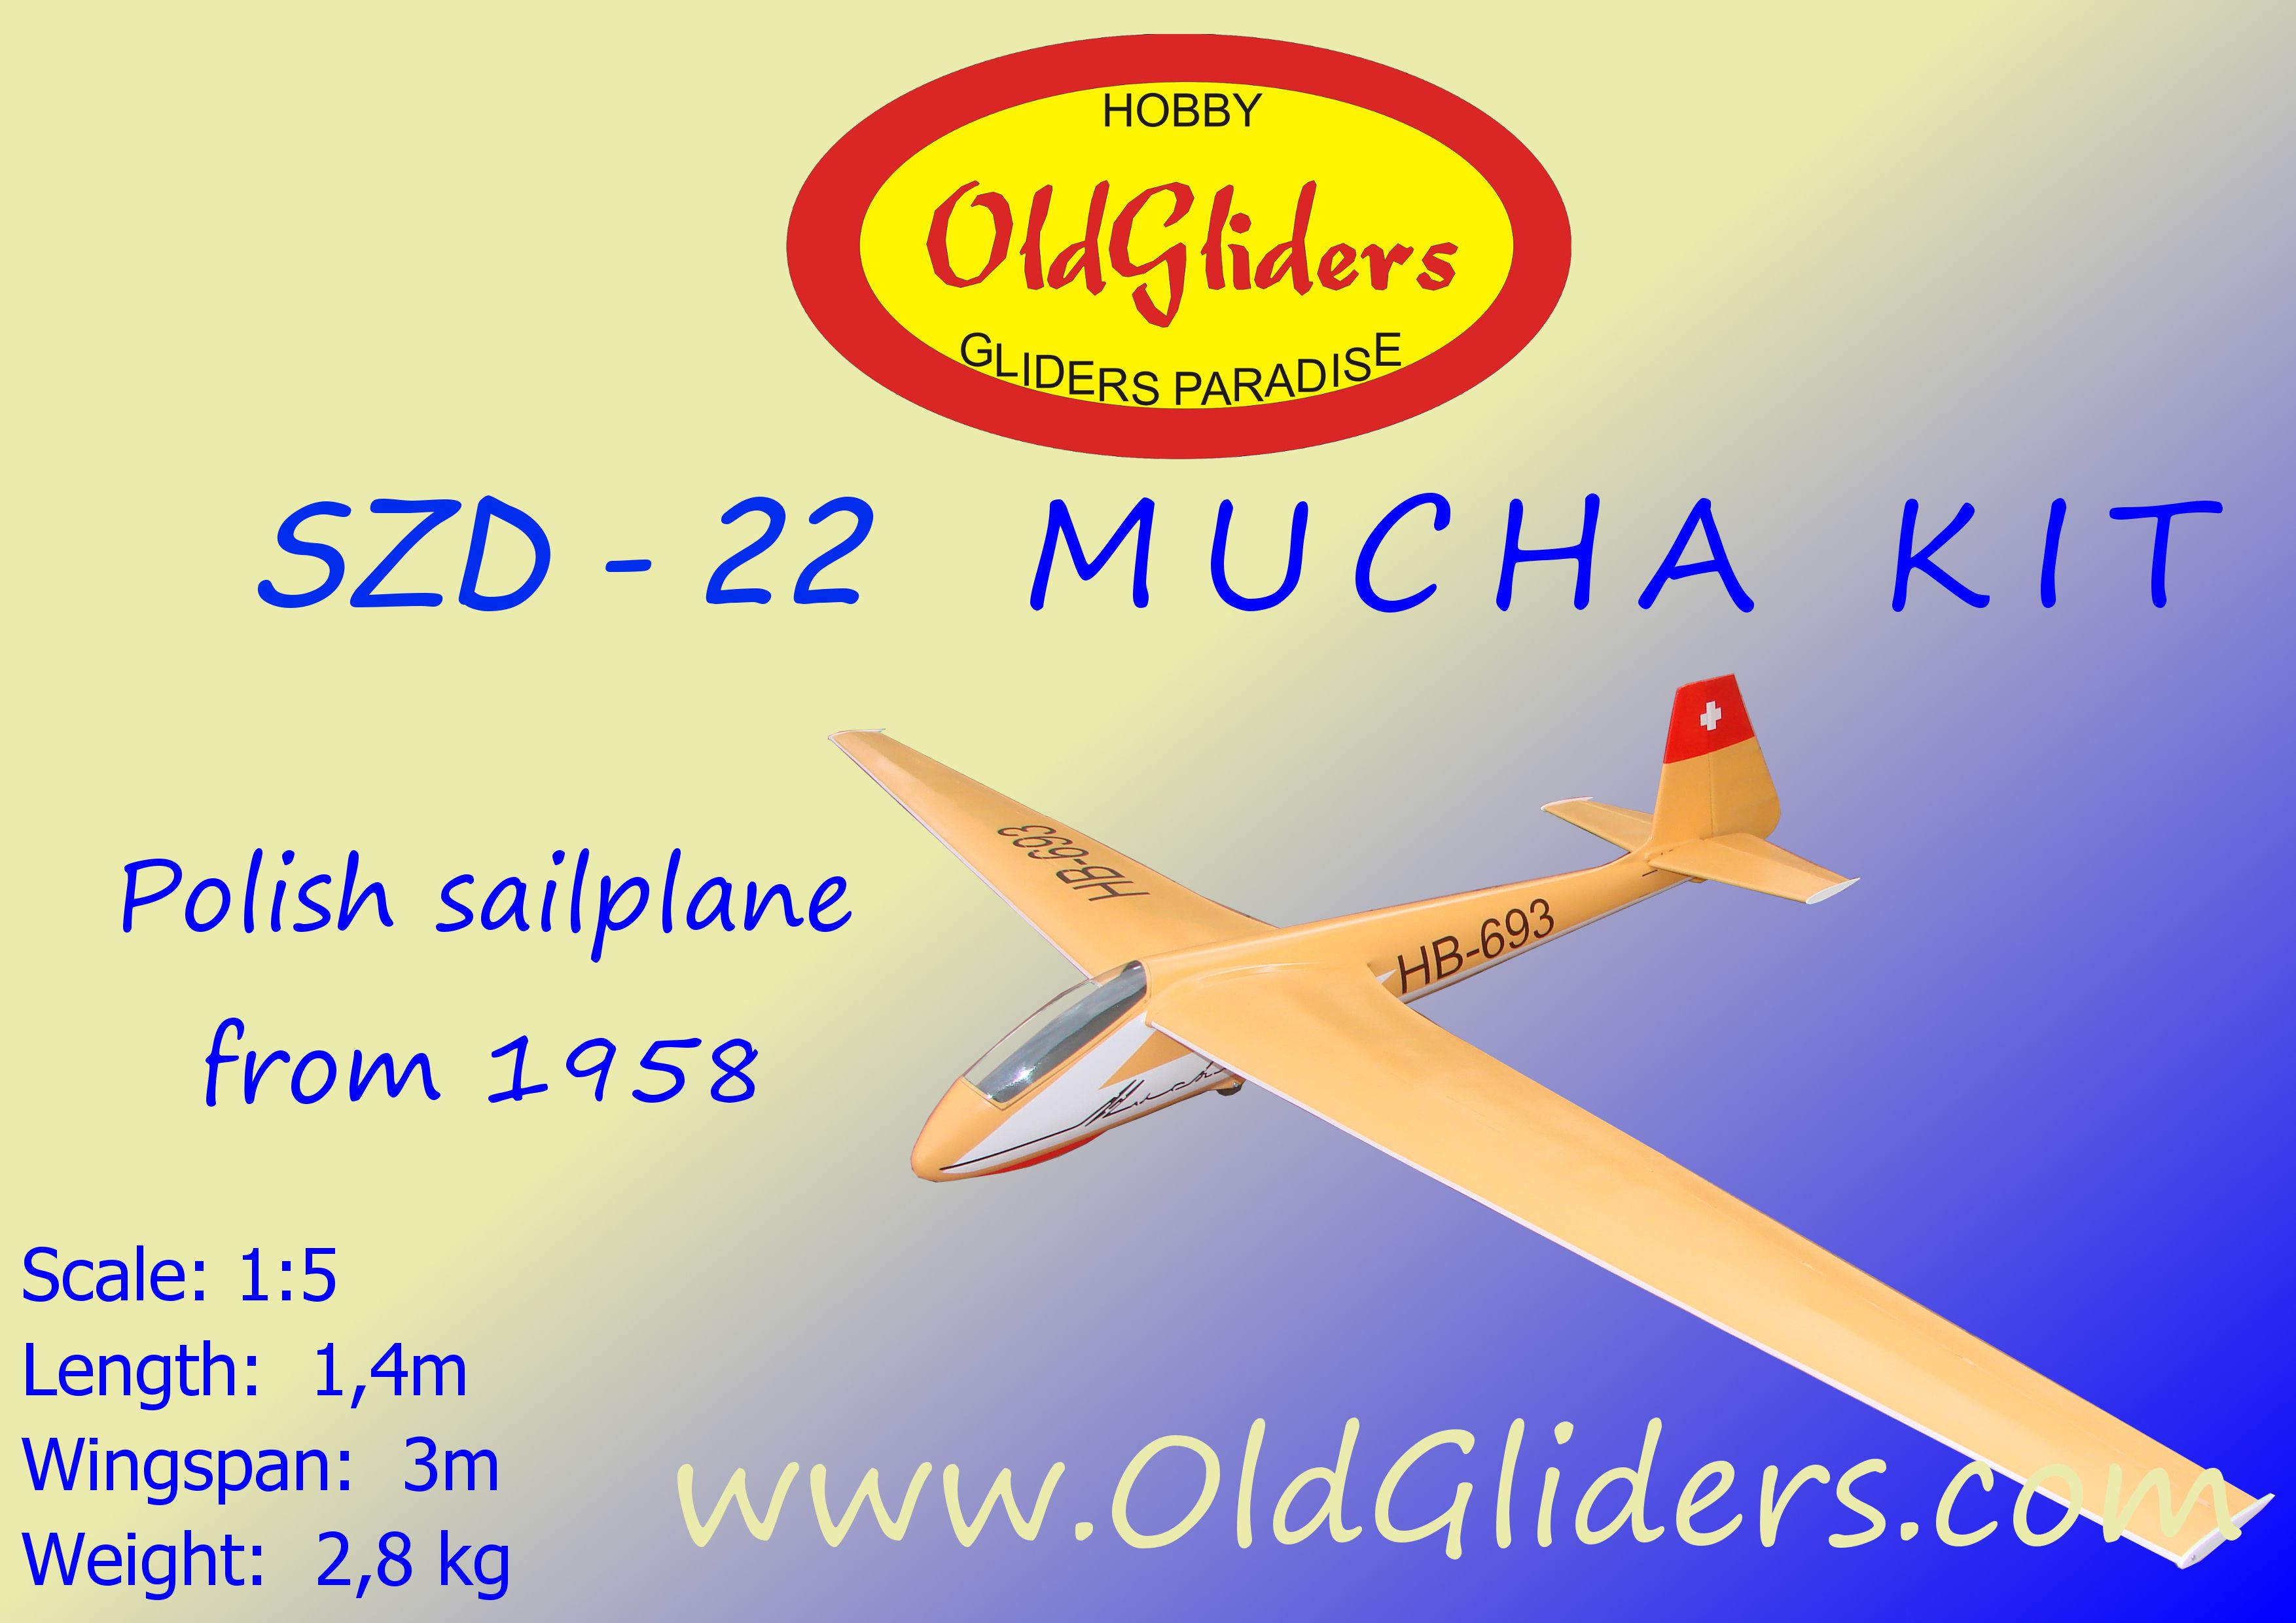 KIT NEW! NEW!!! OldGliders SZD-22 Mucha KIT 1:3 5m 